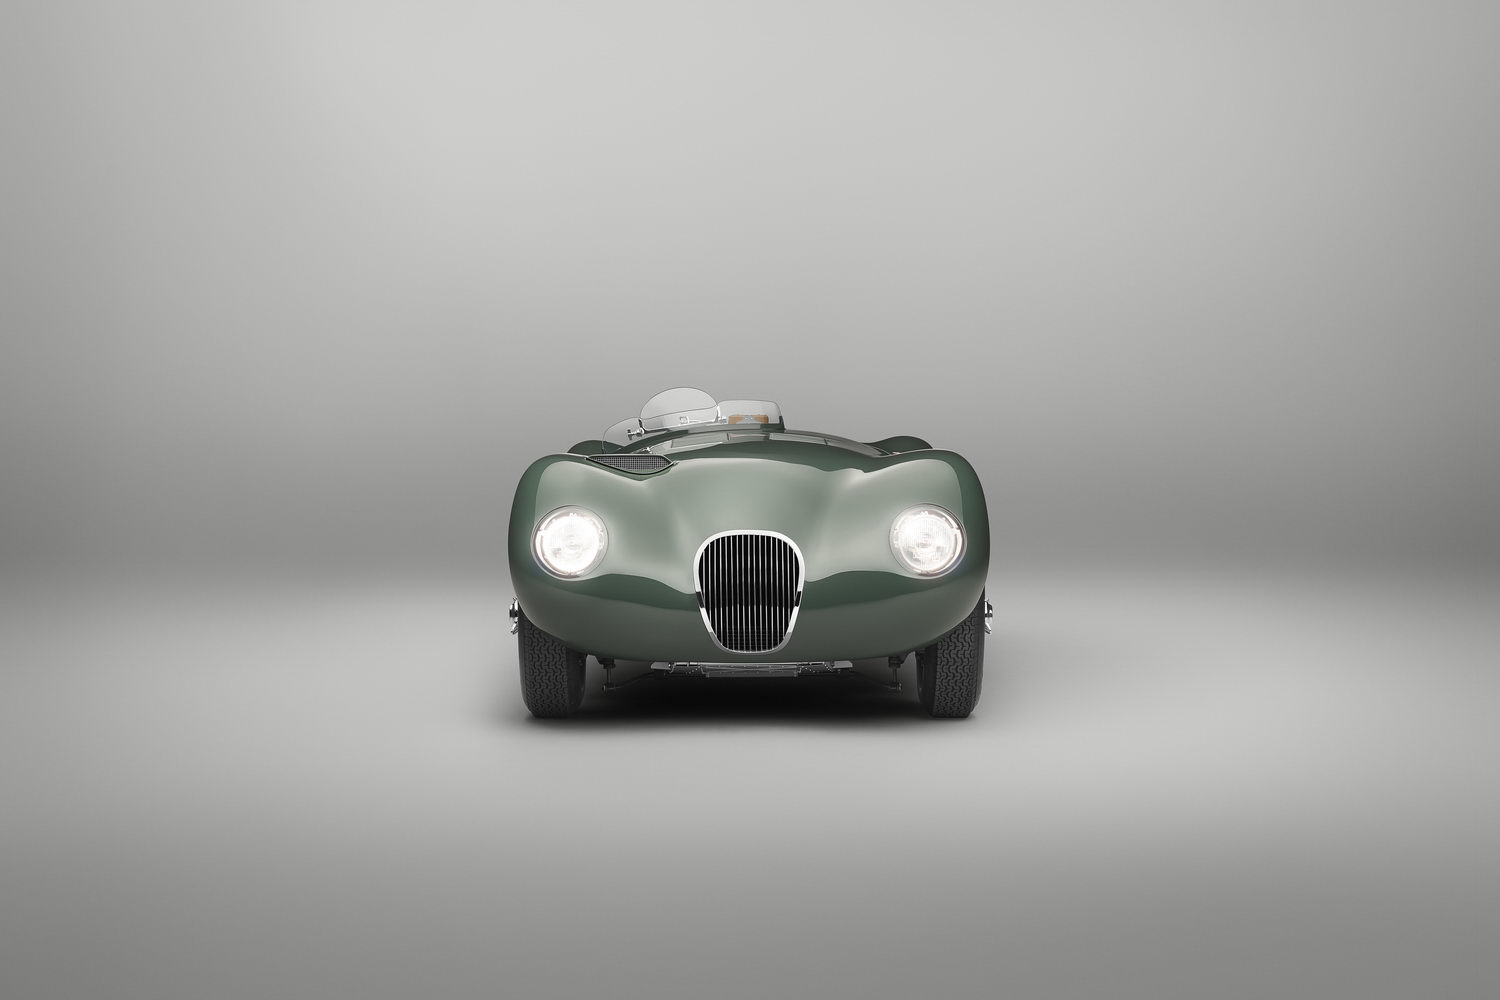 Jaguar recreates its Le Mans C-Type legacy